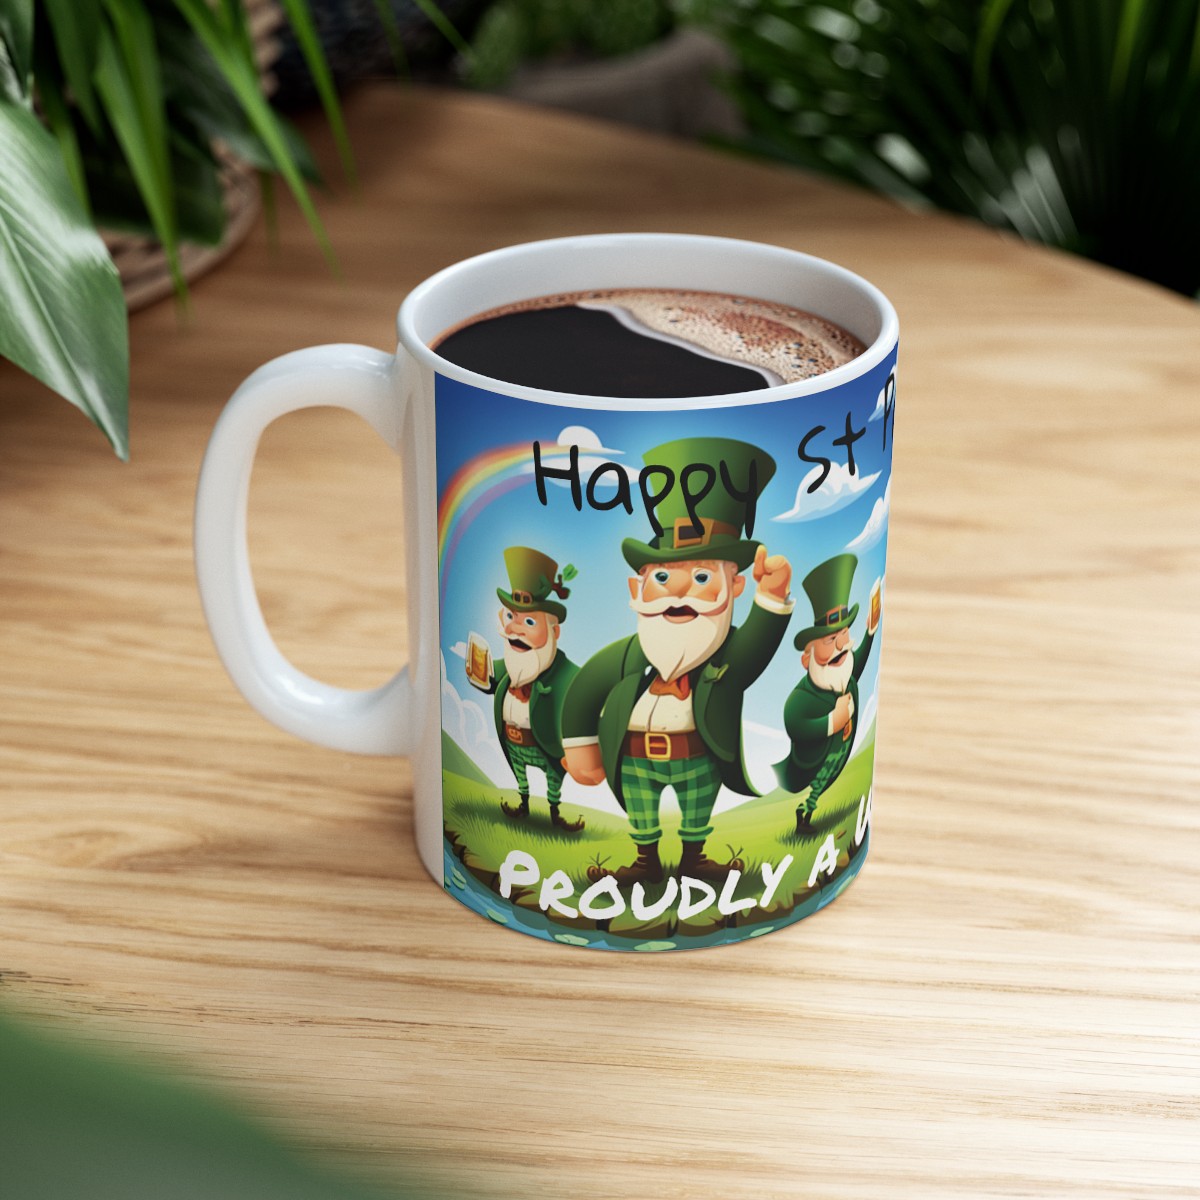 Happy St Patrick's Day, Proudly a Wee Bit Irish!  - Ceramic Mug 11oz product thumbnail image